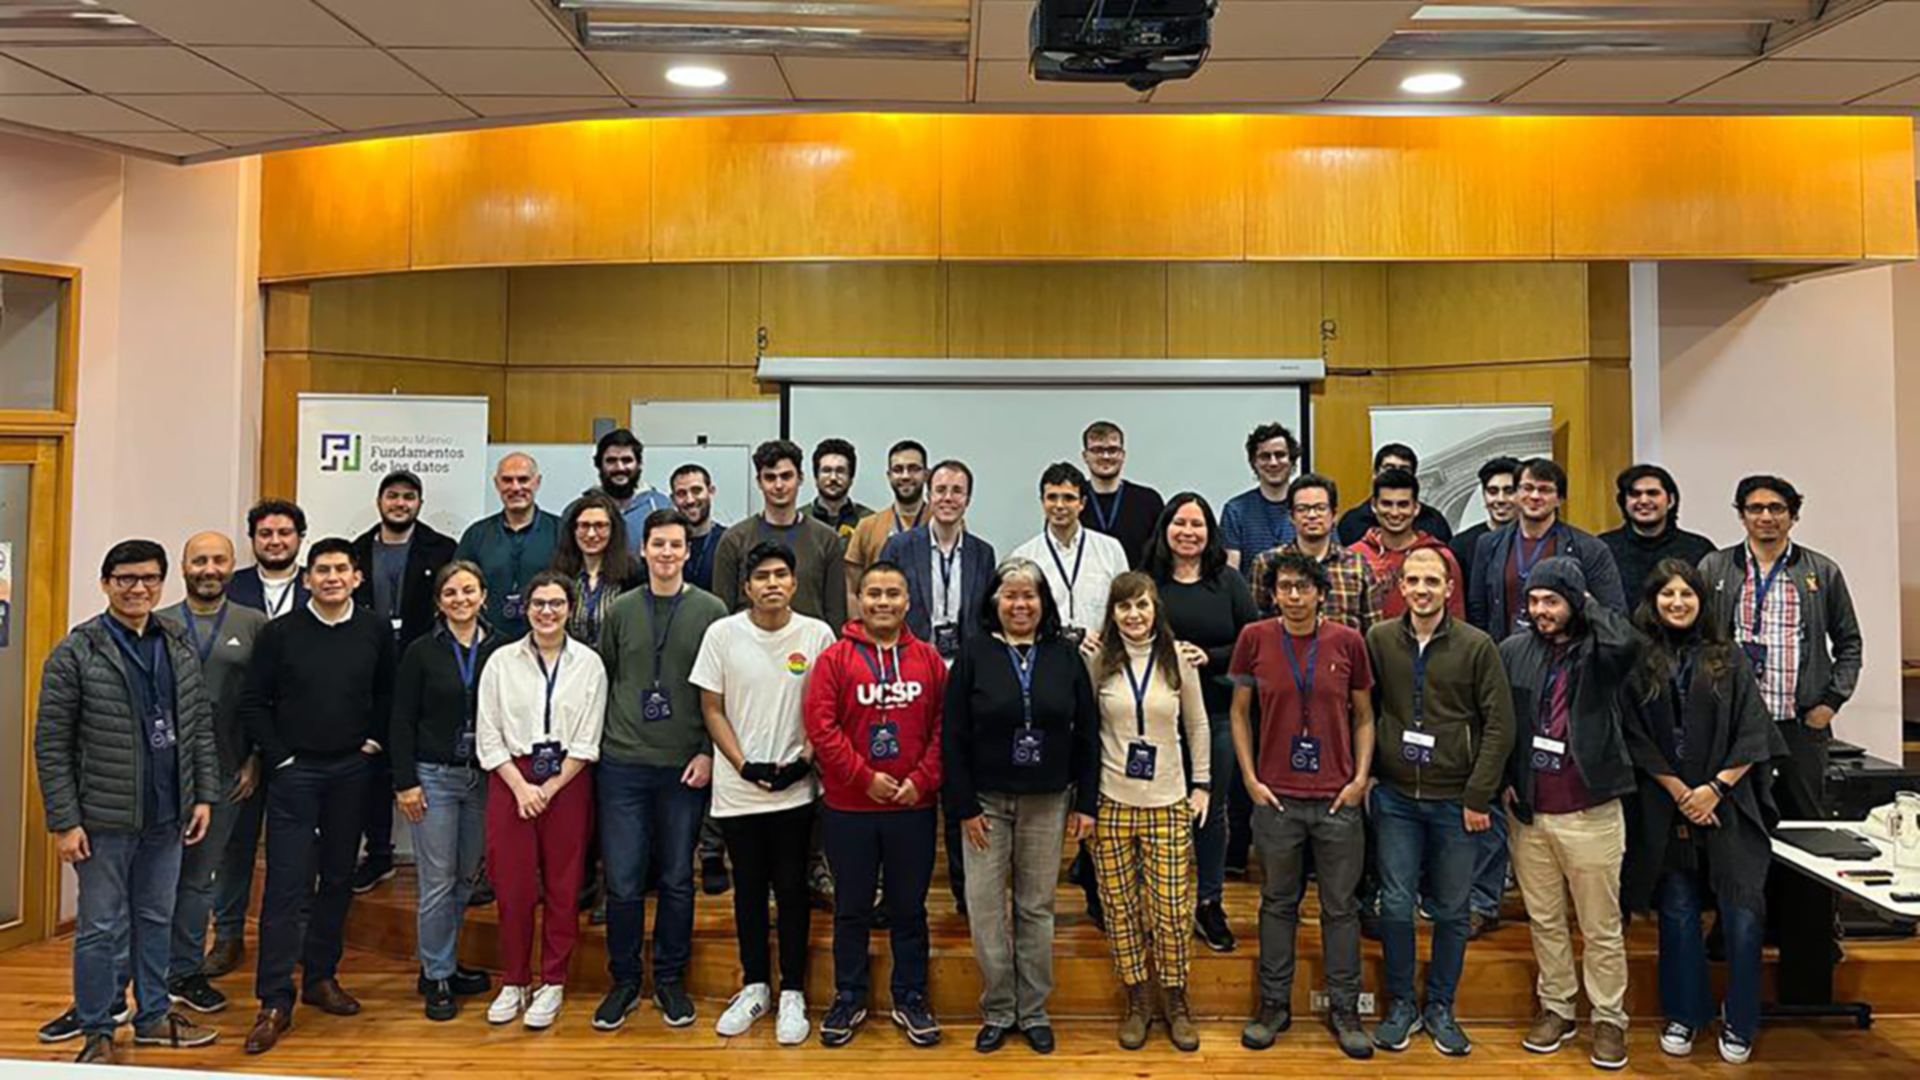 Exitoso workshop reúne a investigadores internacionales sobre fundamentos de los datos en Santiago